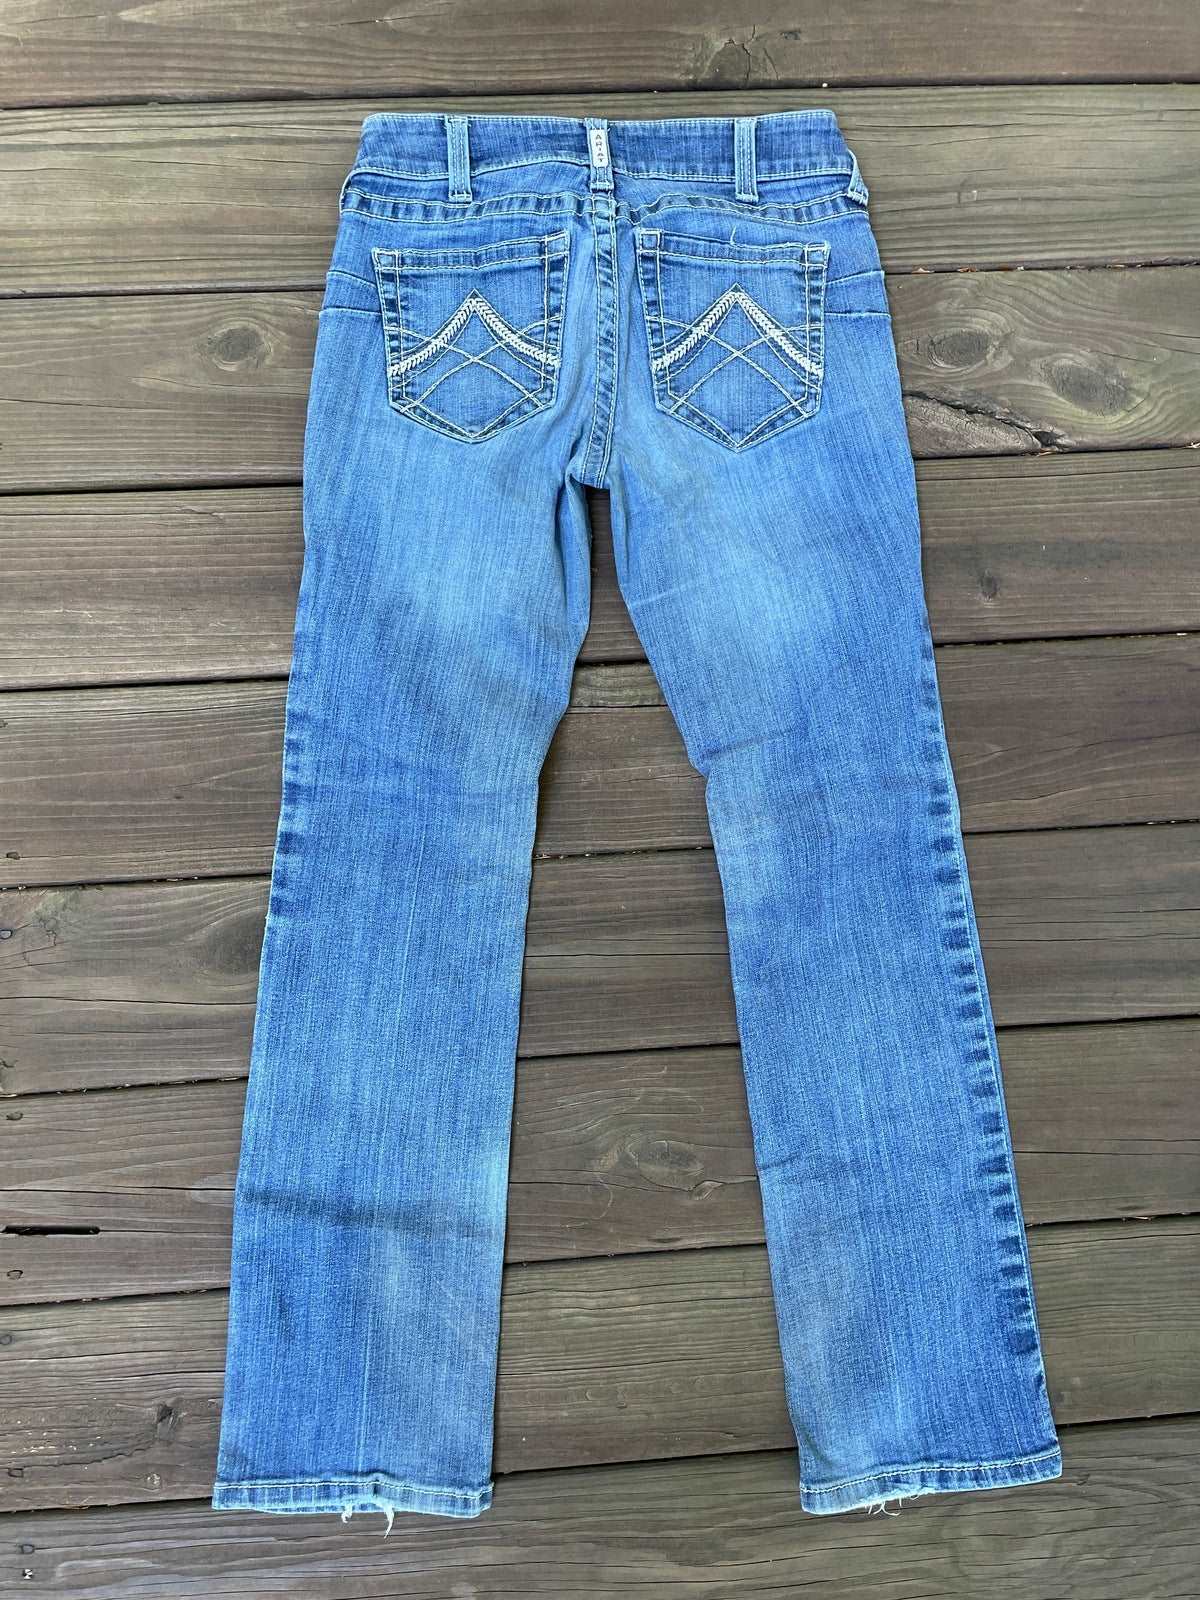 ThriftedEquestrian Ariat Real Denim Jeans - 29r